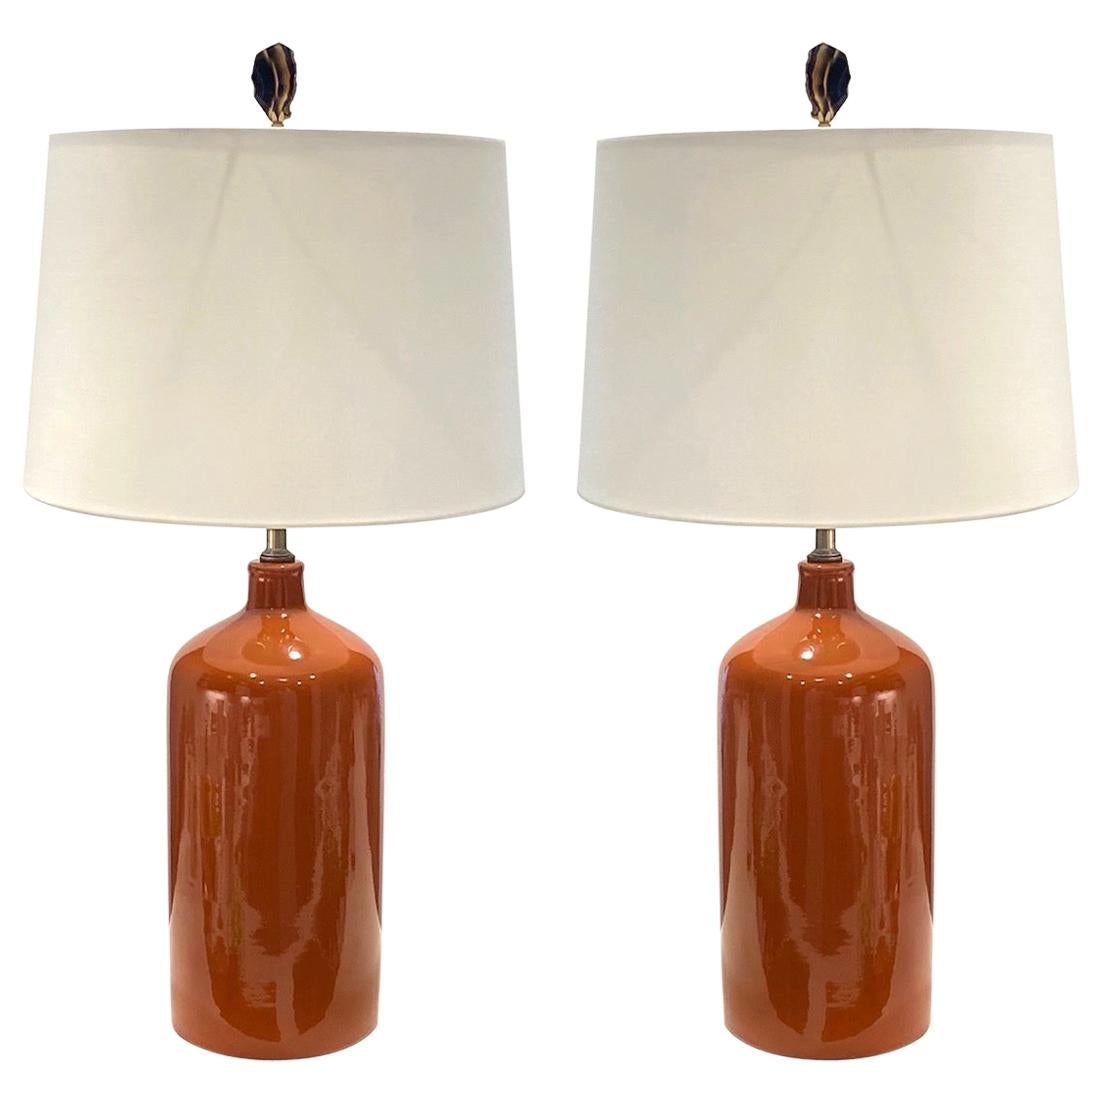 Pair of Mid-Century Modern Ceramic Lamps in Burnt Orange, circa 1970s